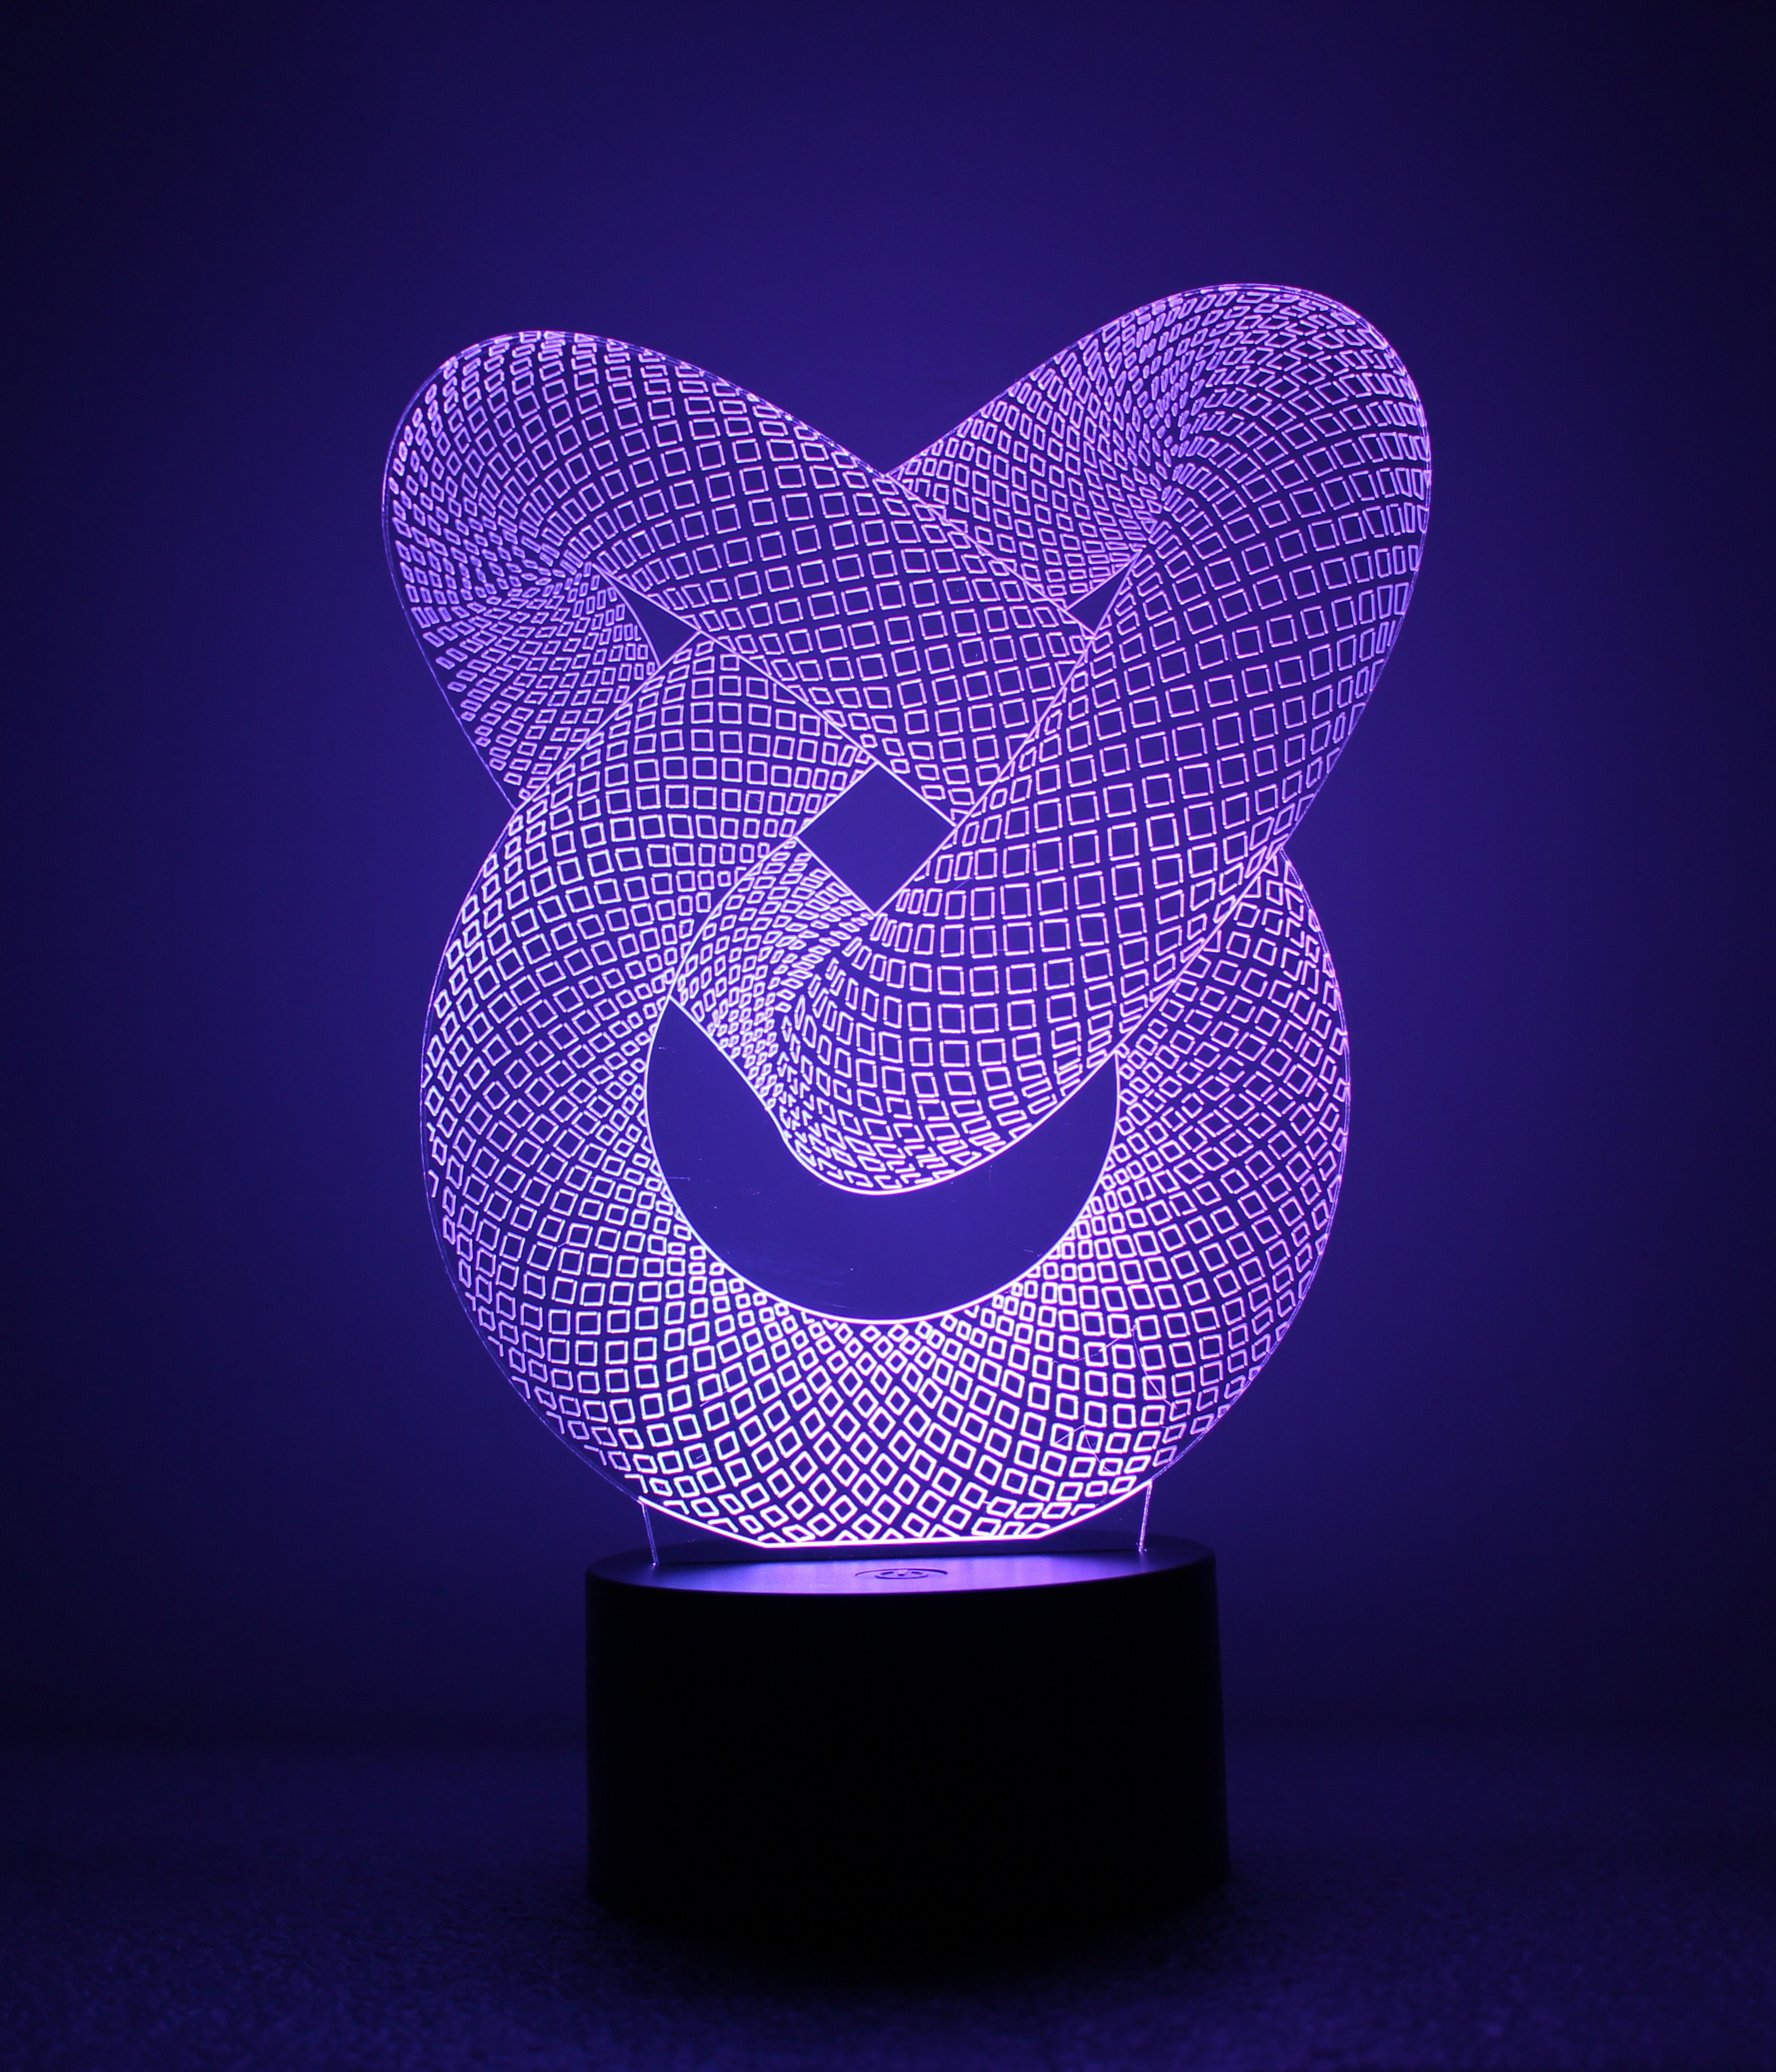 Đèn ngủ 3D - Đèn led 3D hình 3 vòng xoáy